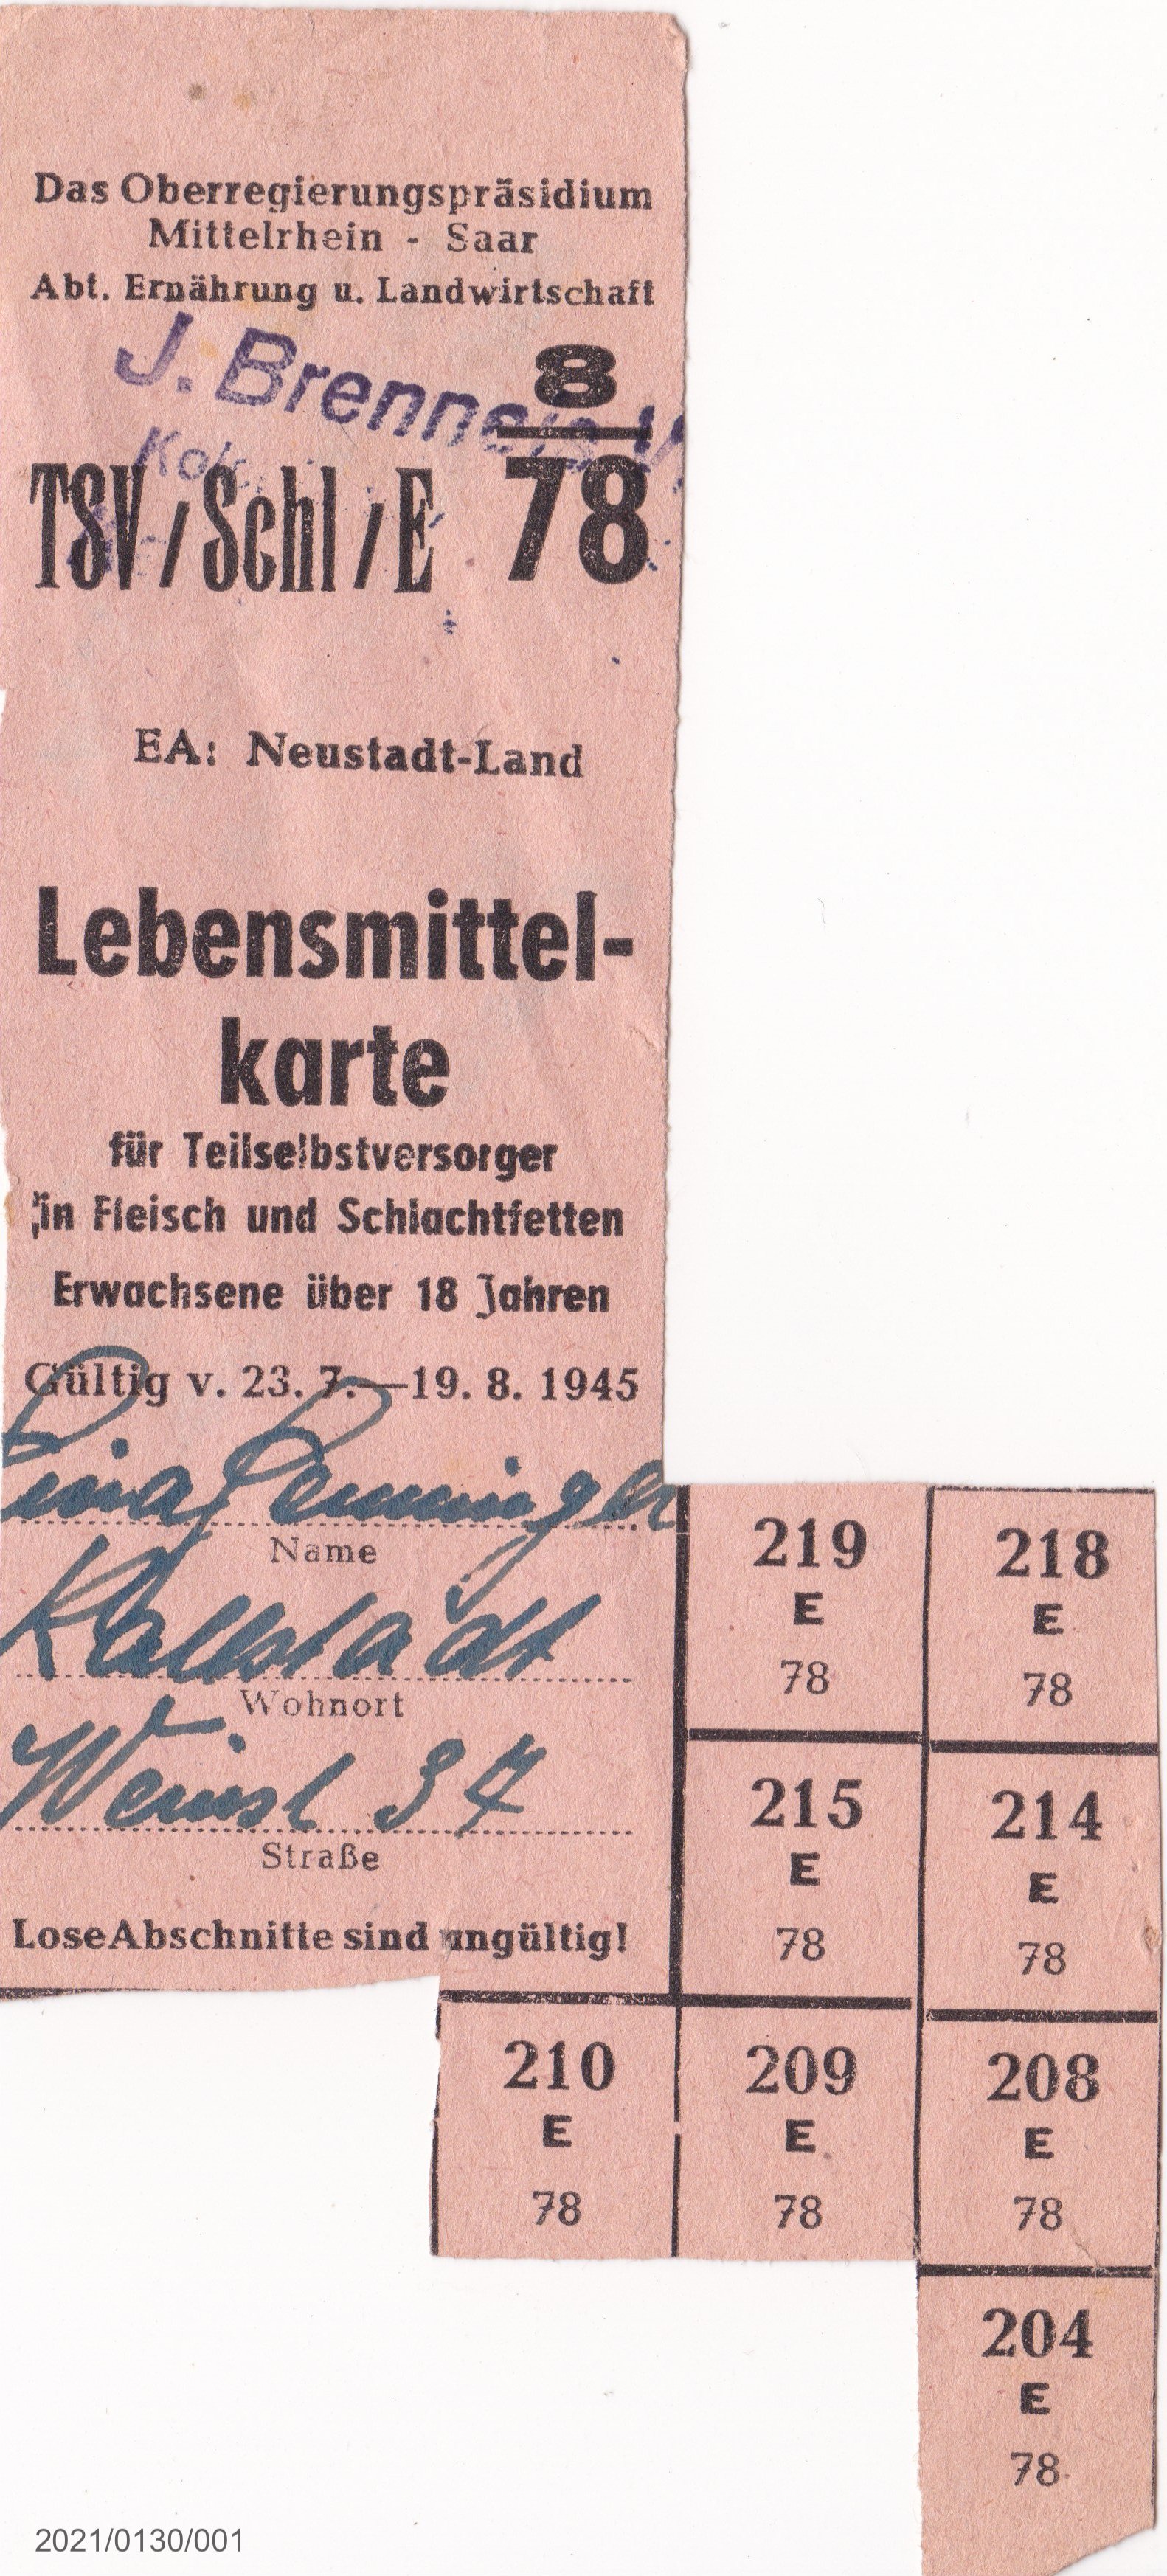 Lebensmittekarte für Teilselbstversorger in Fleisch und Schlachtfetten 1945 (Museumsgesellschaft Bad Dürkheim e. V. CC BY-NC-SA)